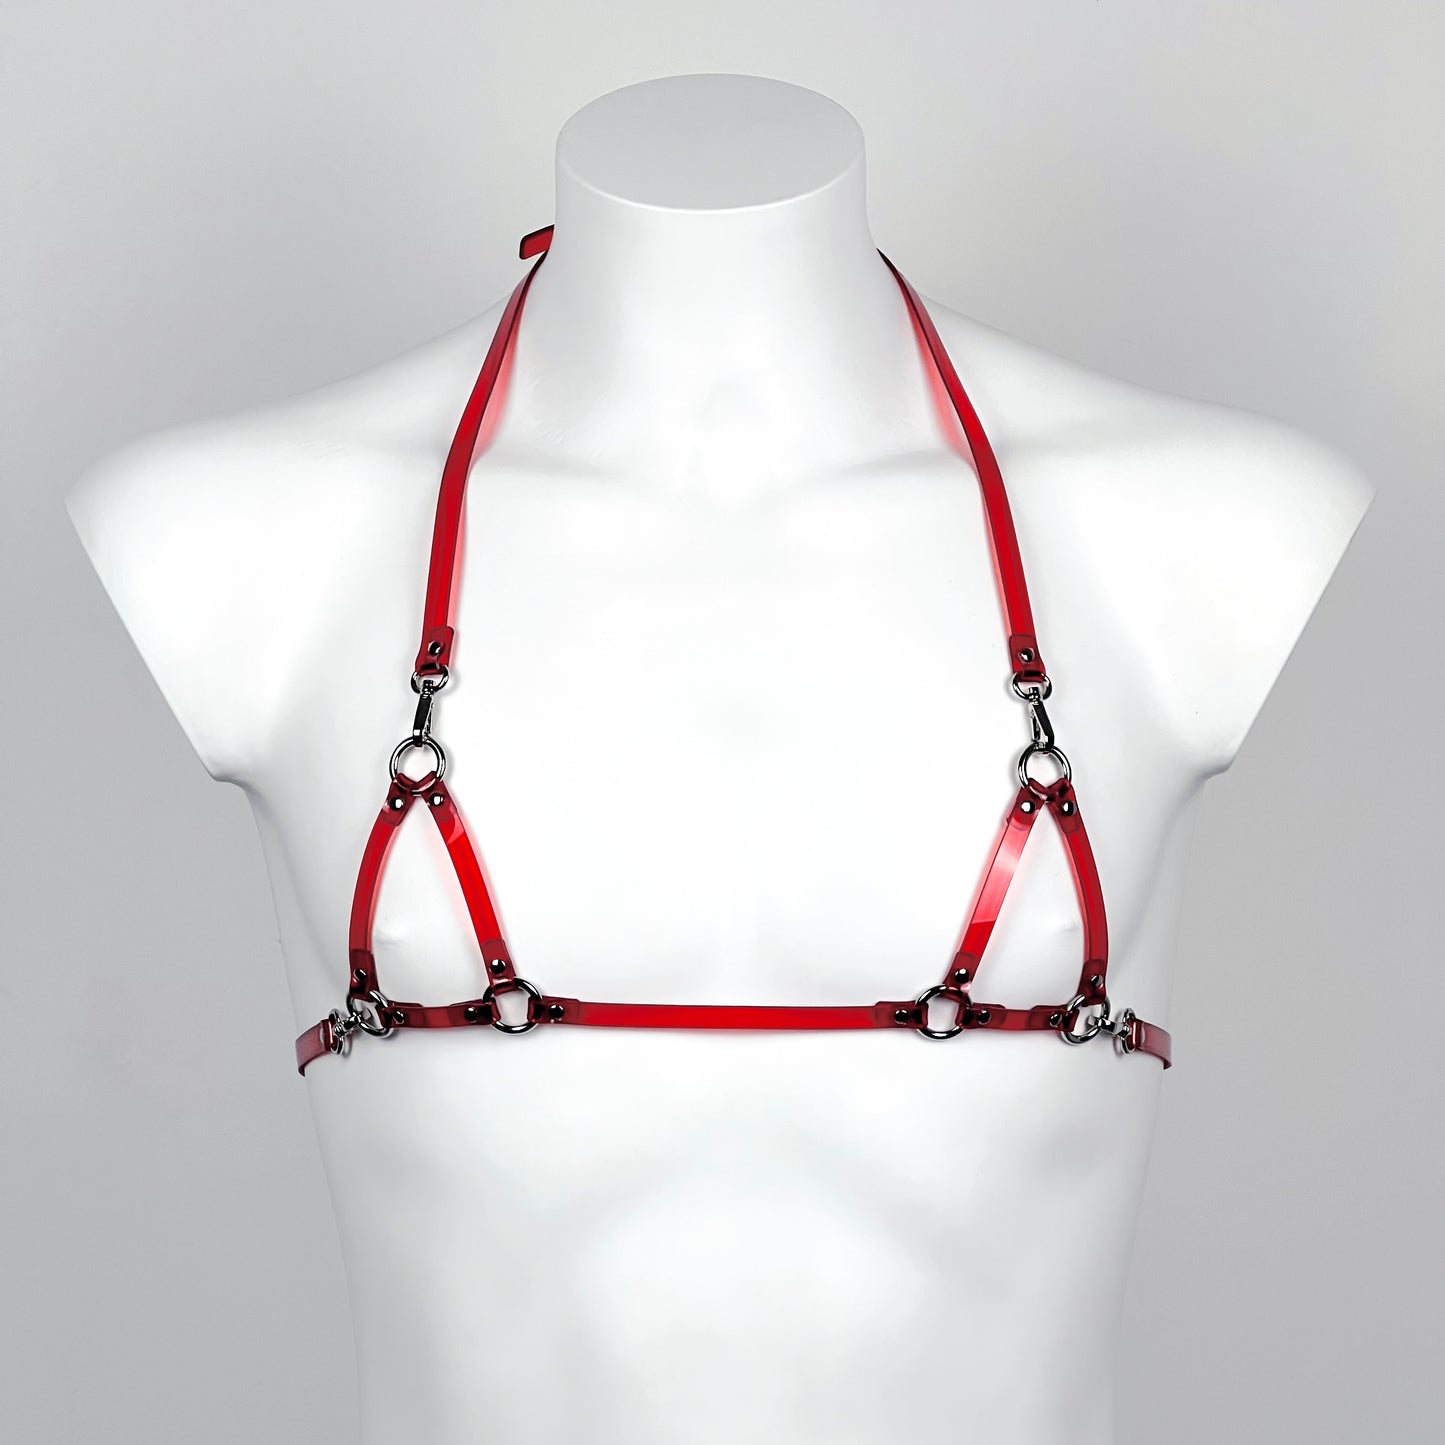 BRASM harness